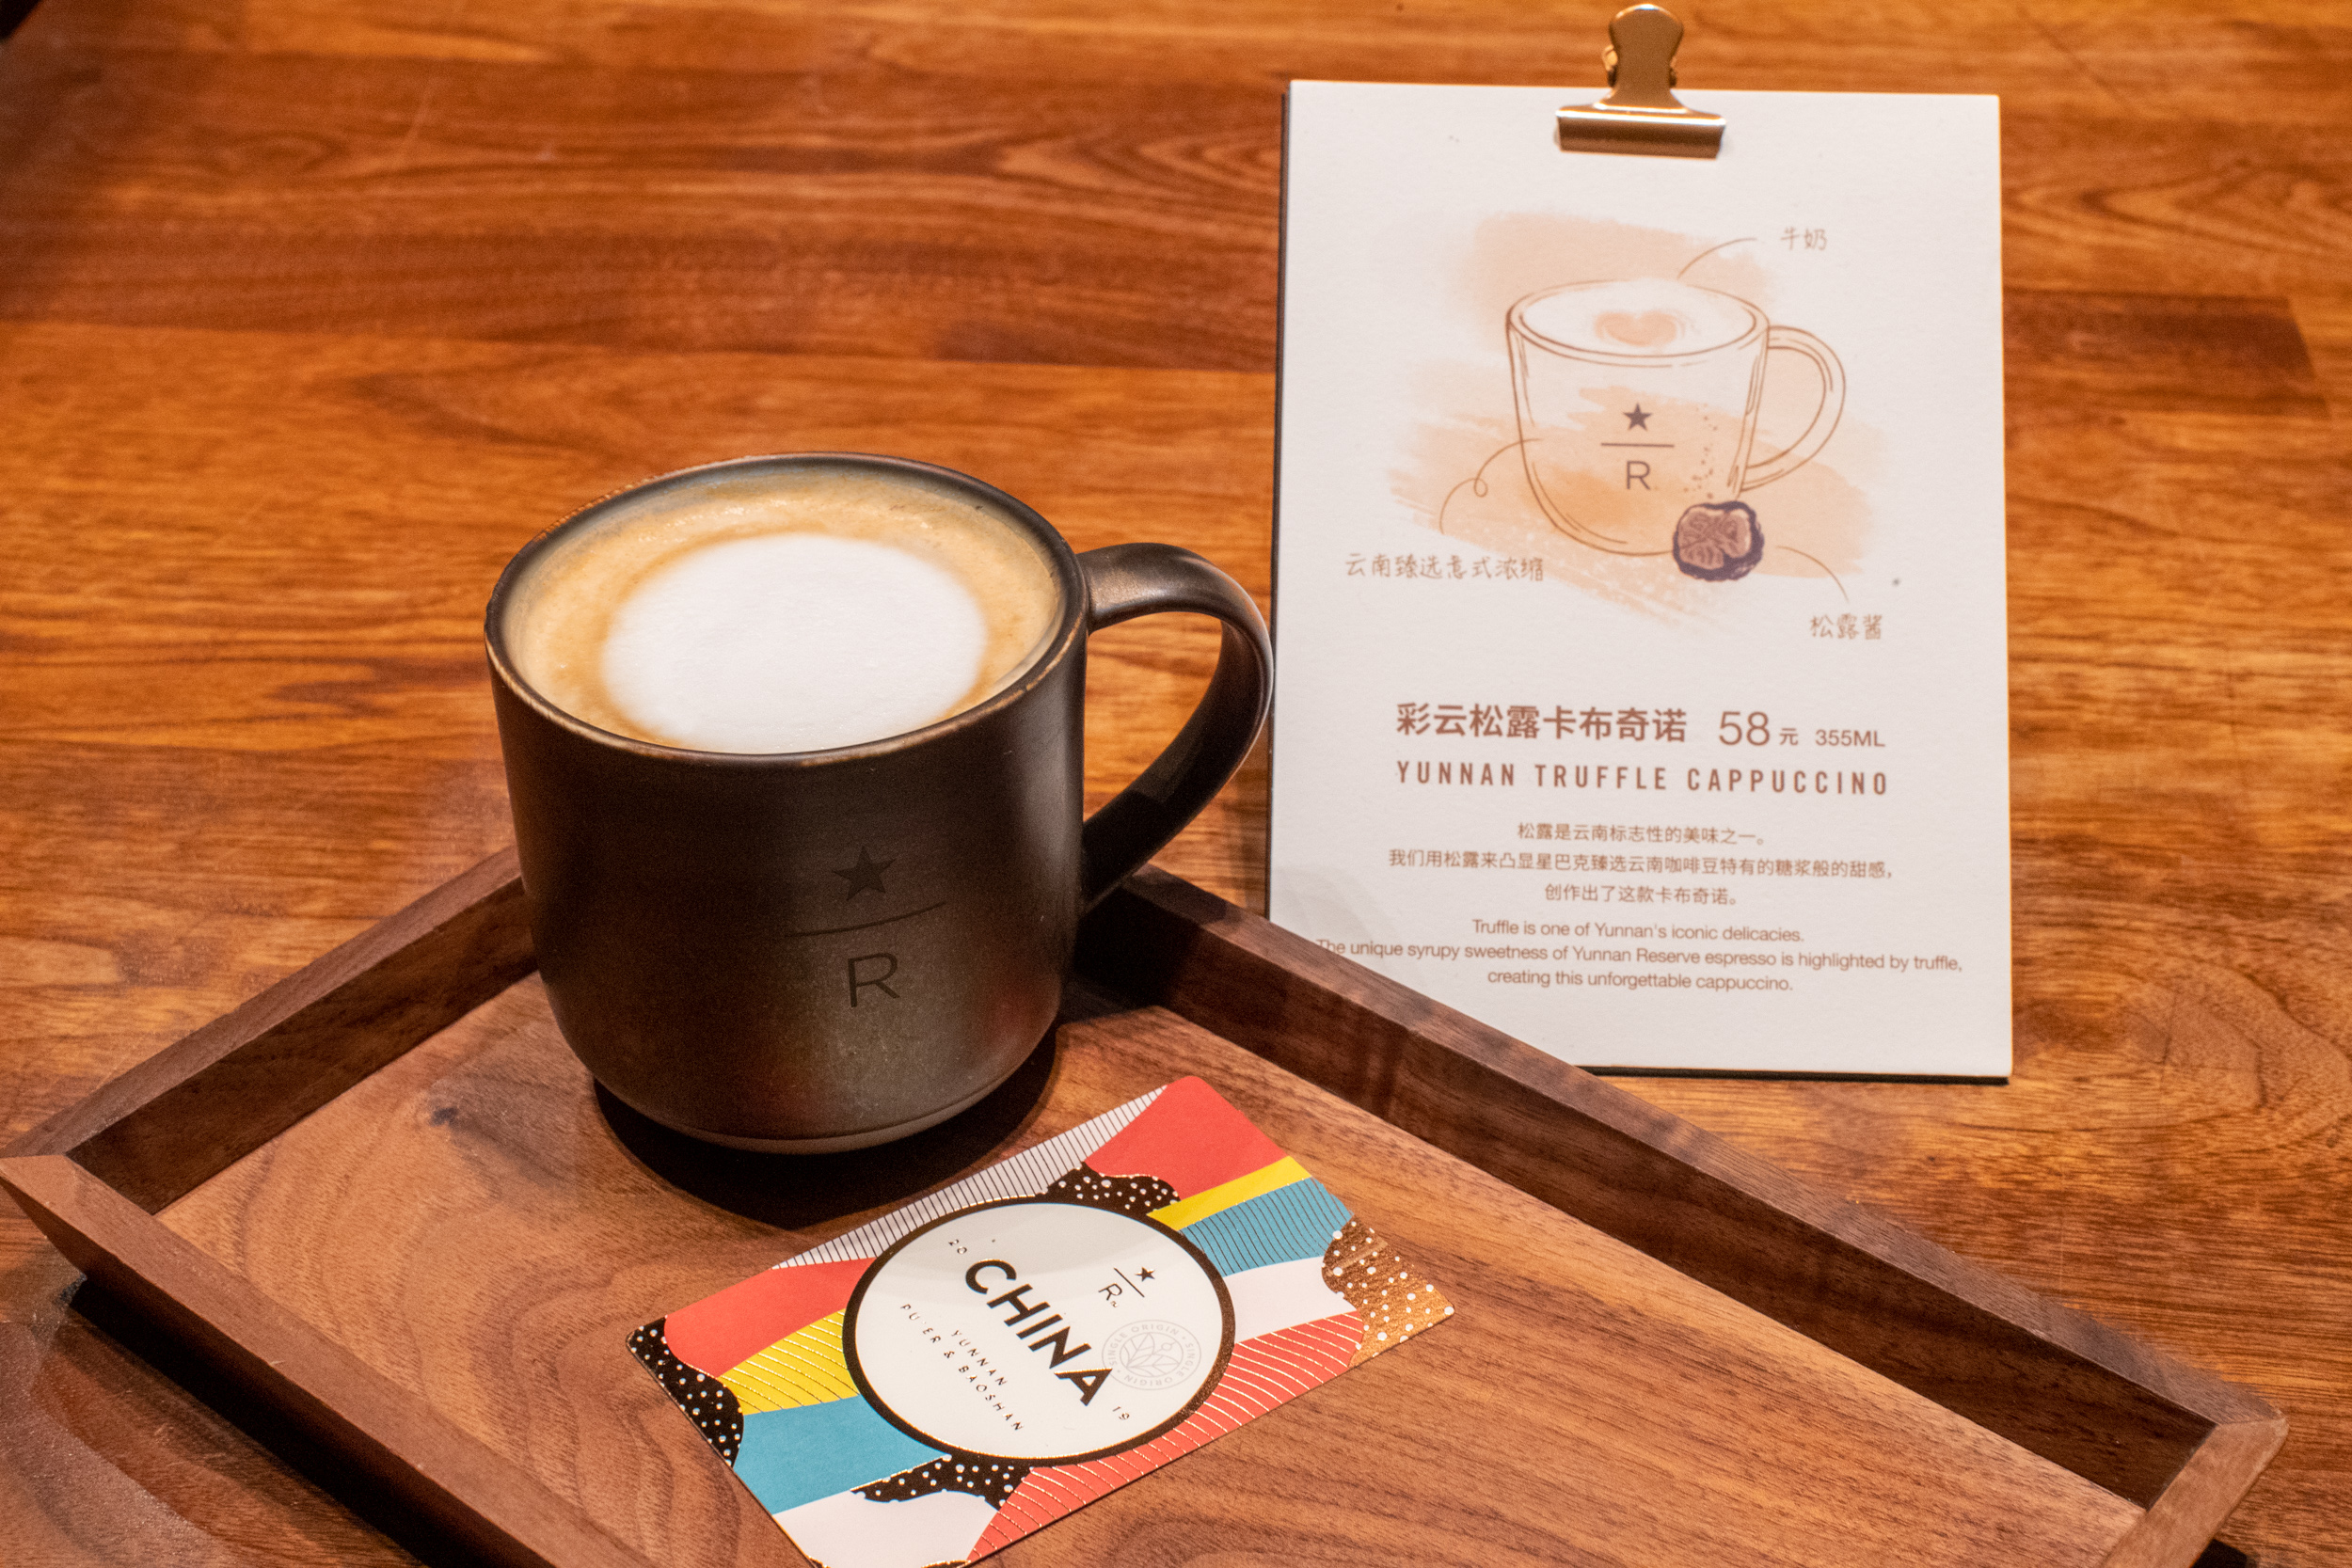 以咖啡之名星巴克云南臻选咖啡系列2019再次推出